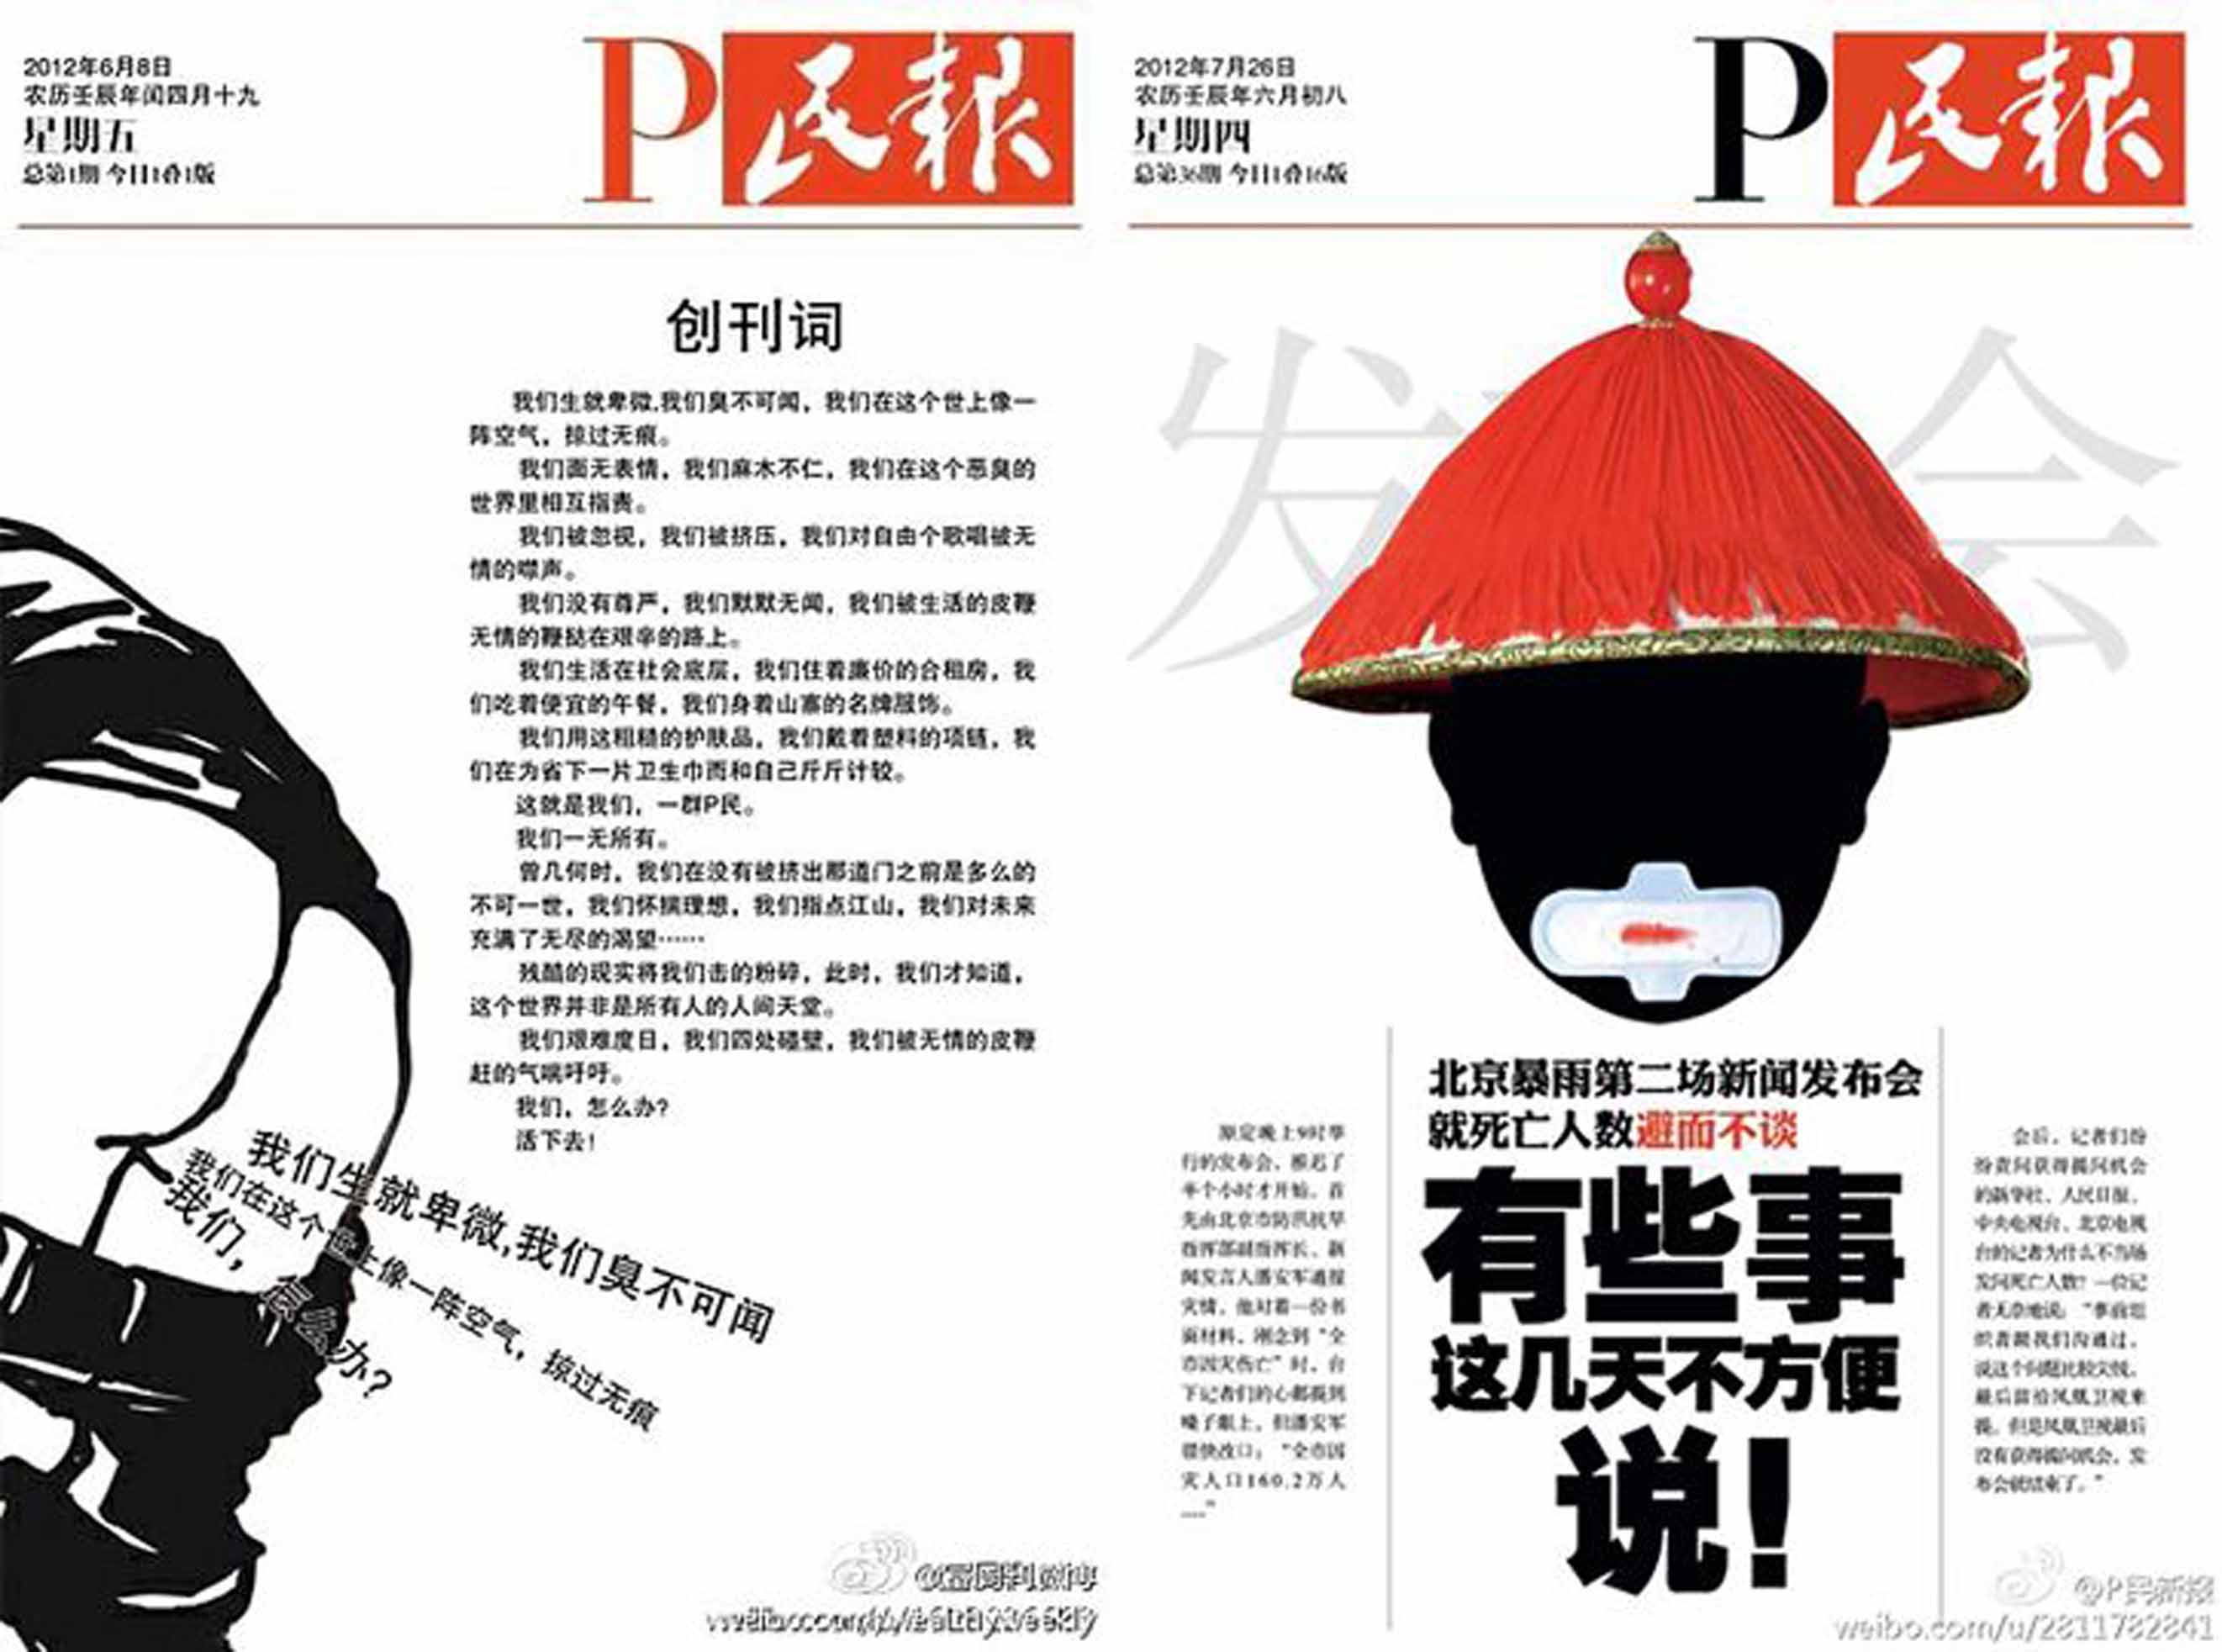 左：《P民报》2012年6月8日创刊号。网络图片 右：《P民报》内容以幽默讽刺方式针砭时弊。网络图片P民报网络截图。